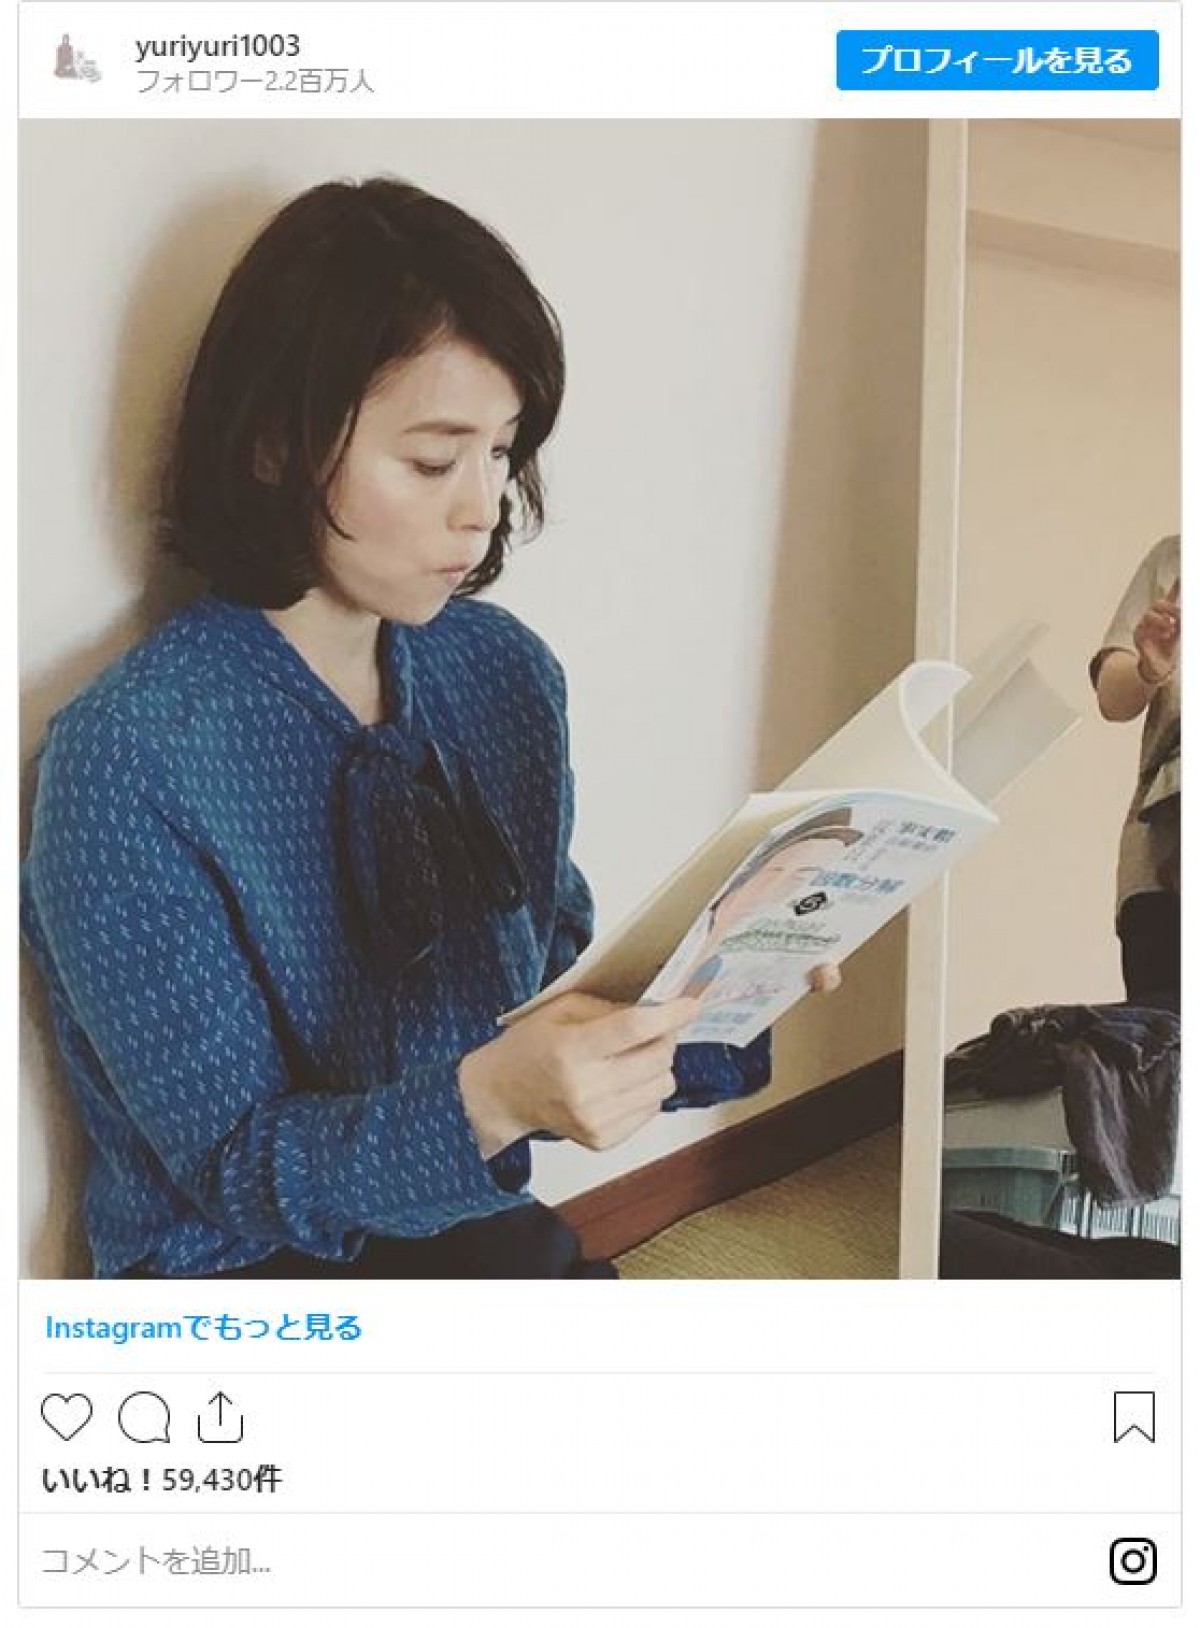  石田ゆり子、『逃げ恥』は「すごいドラマ」 撮影当時のショット公開